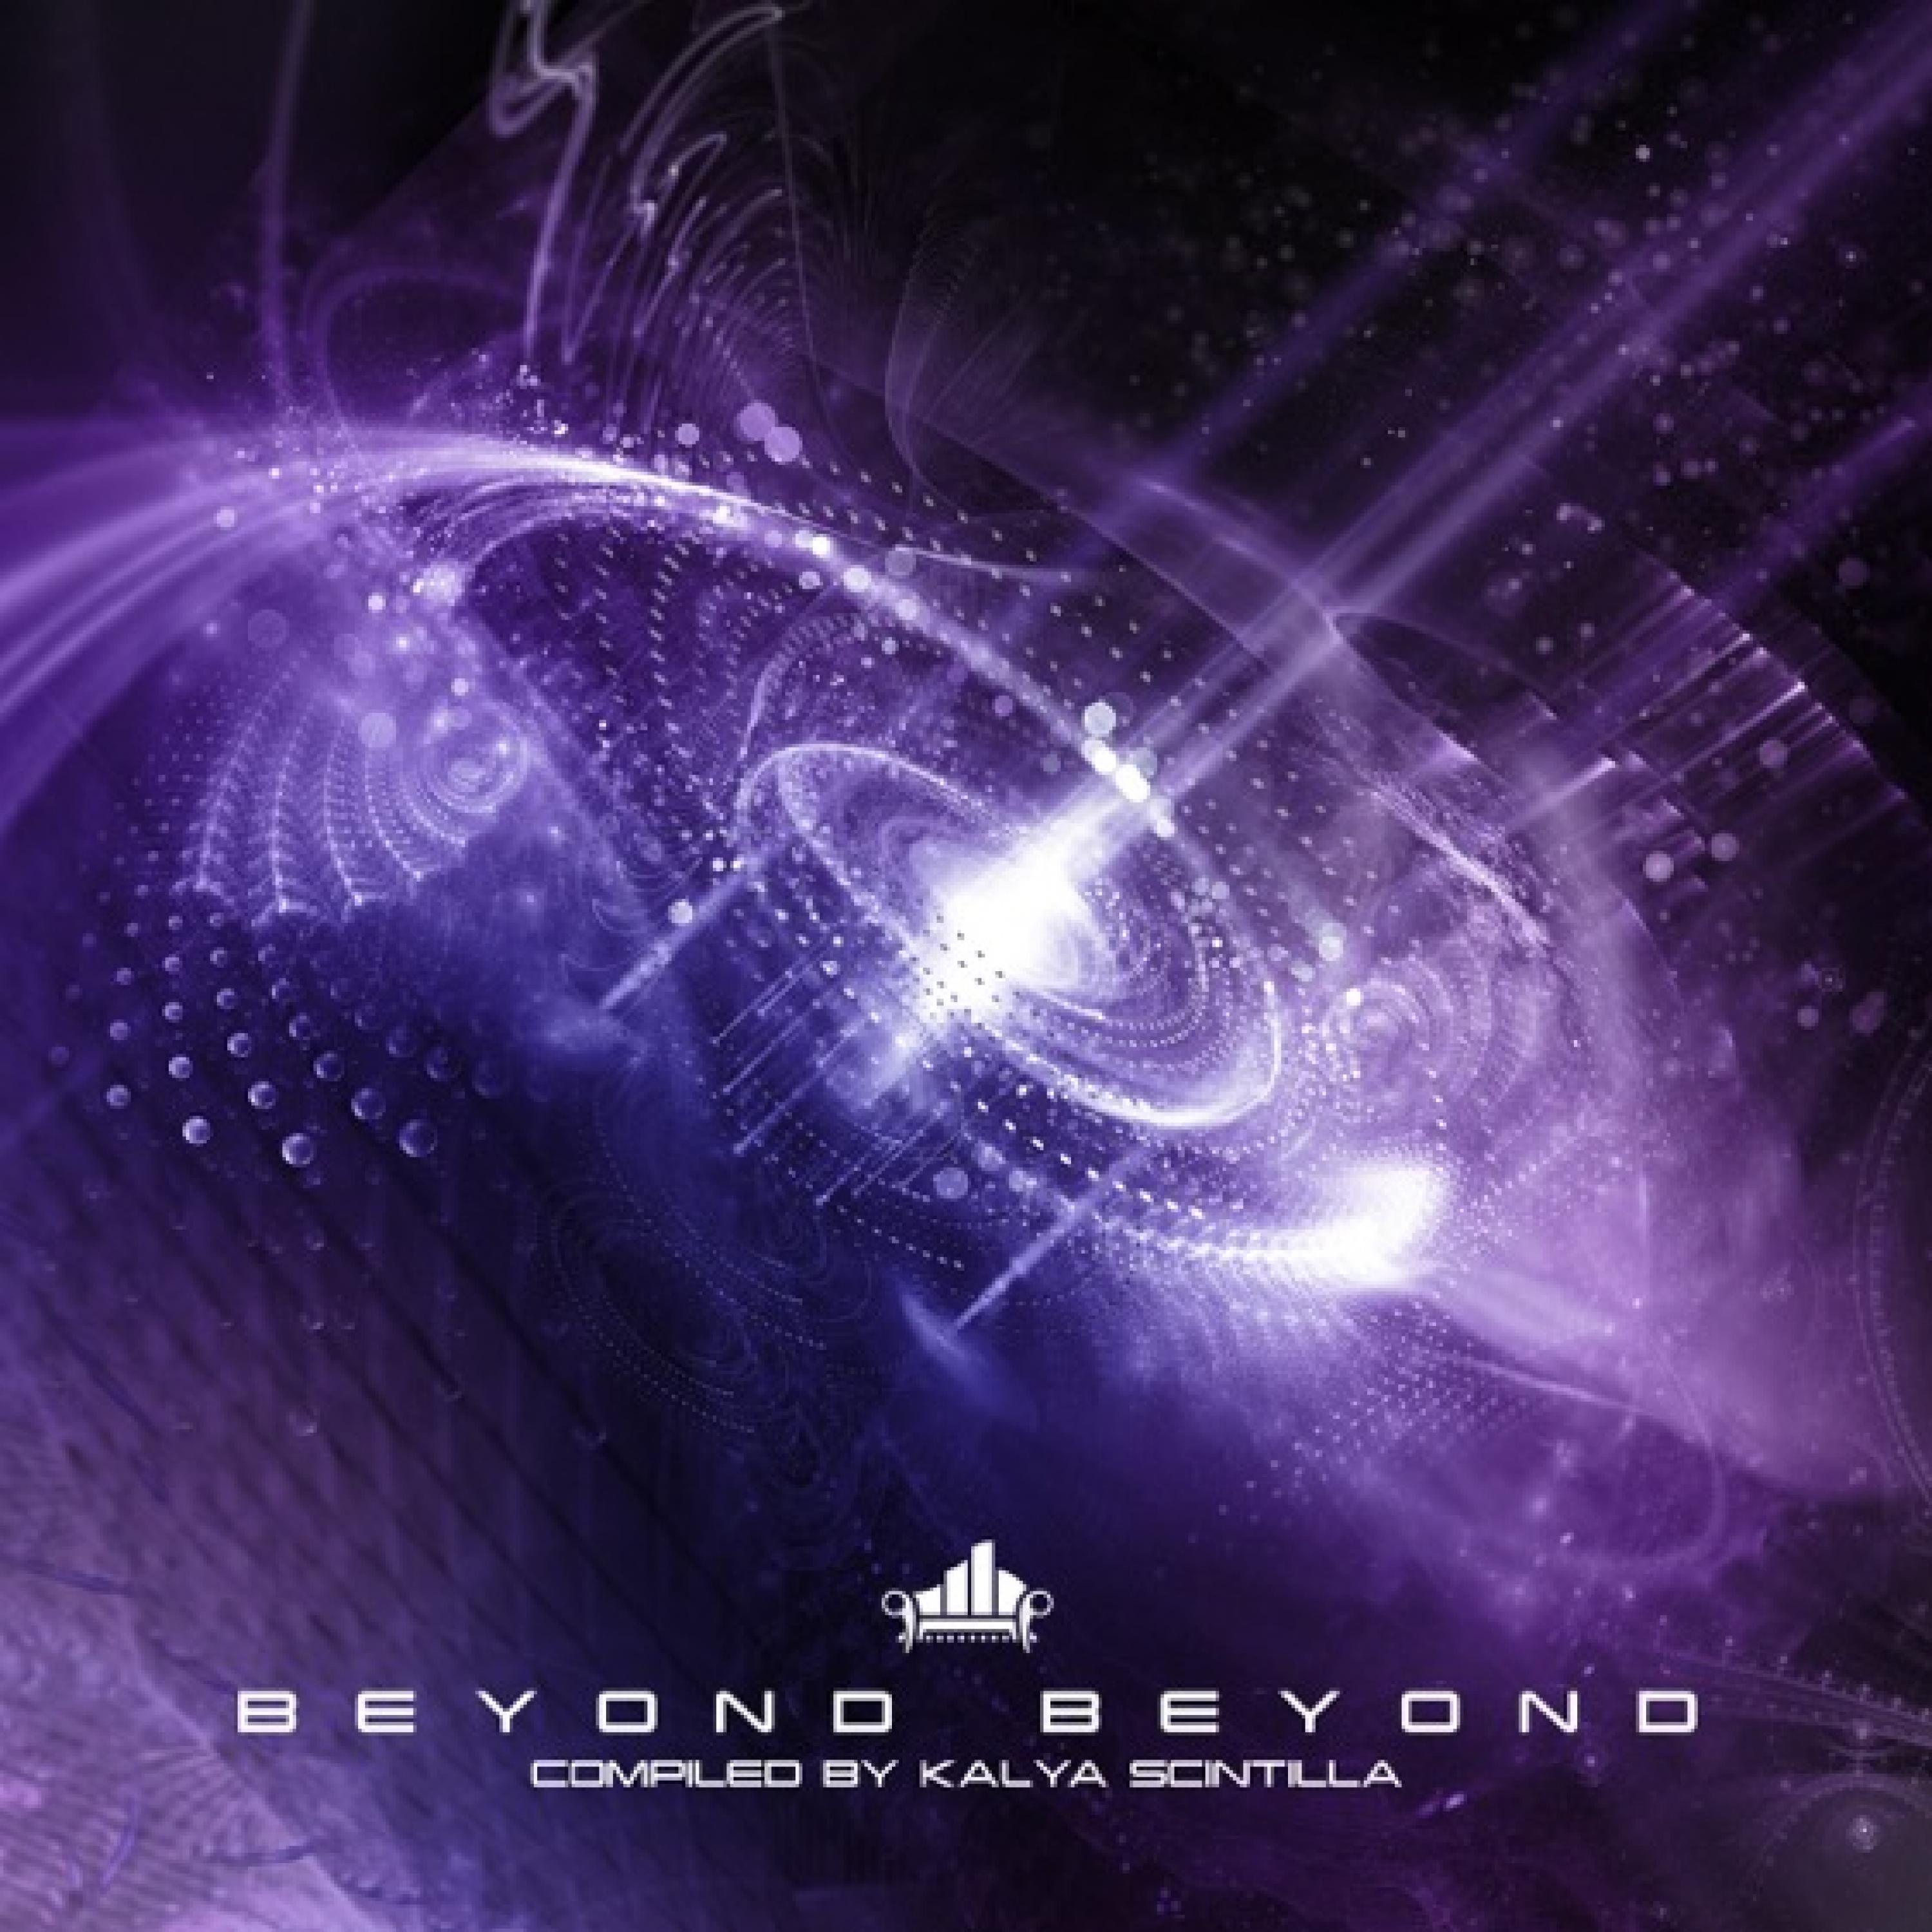 Beyond Beyond (Compiled by Kalya Scintilla)